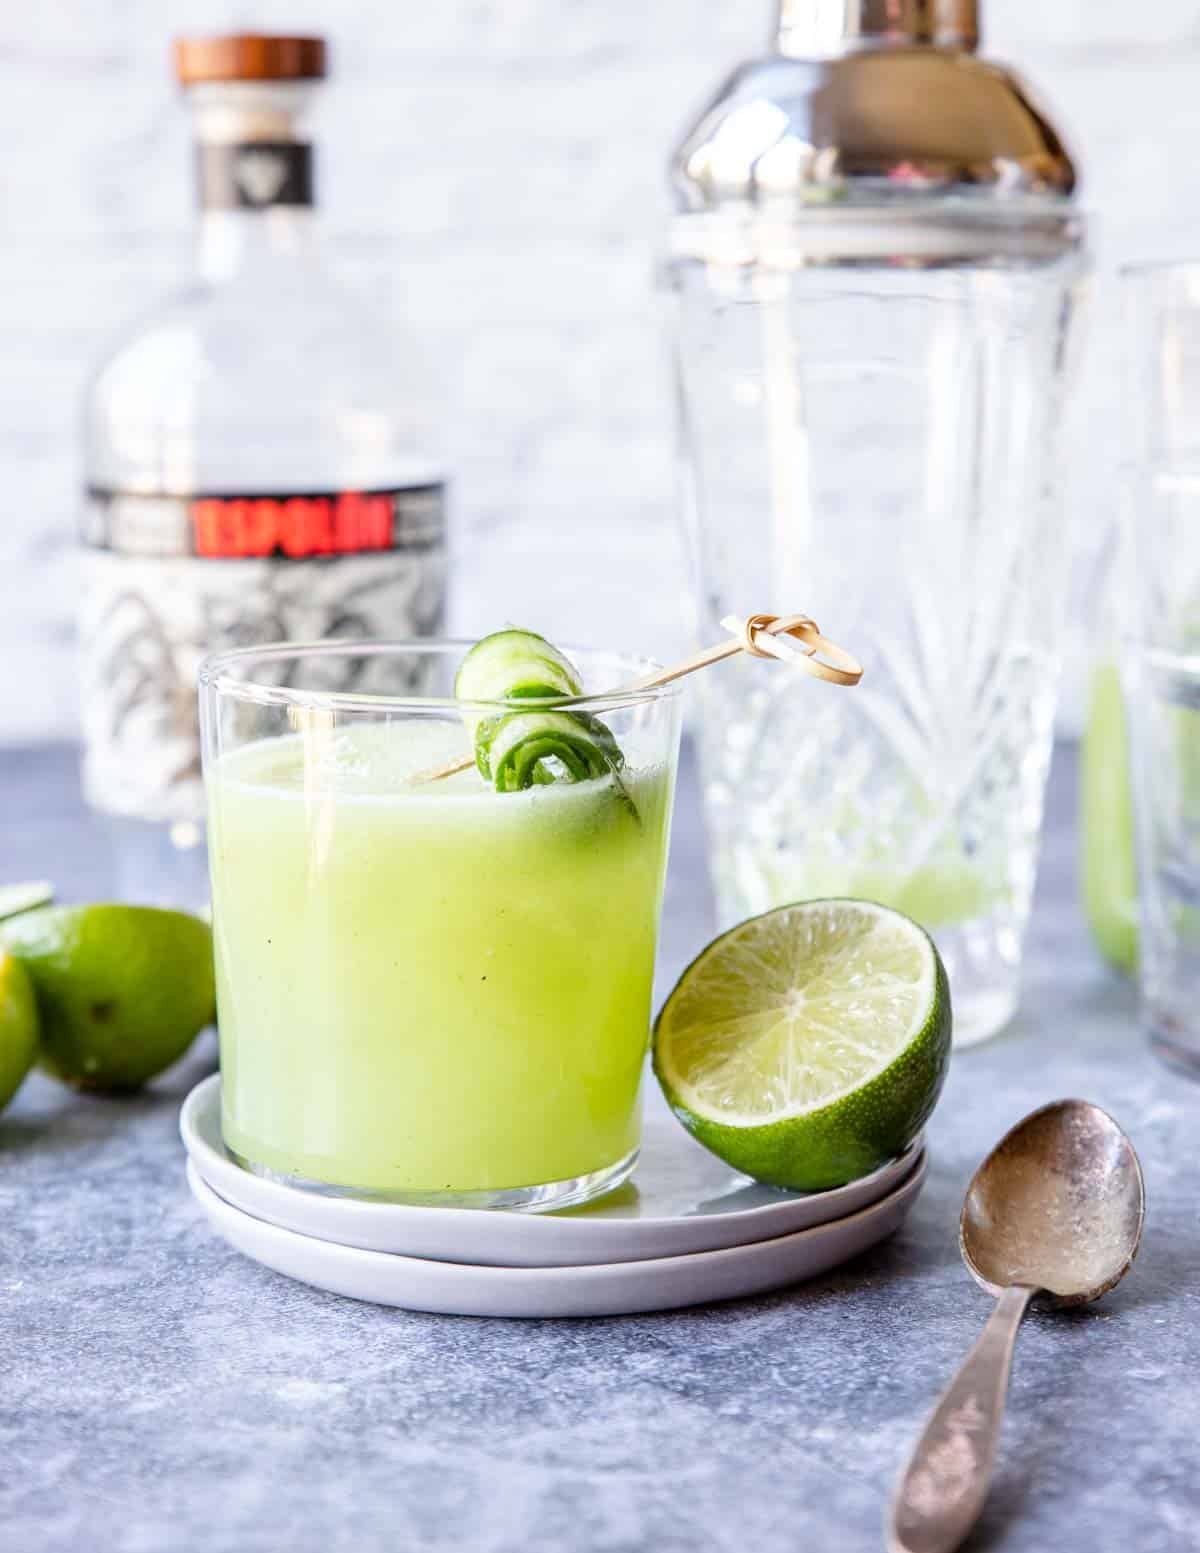 Cucumber Margarita in a glass with a fresh cucumber garnish